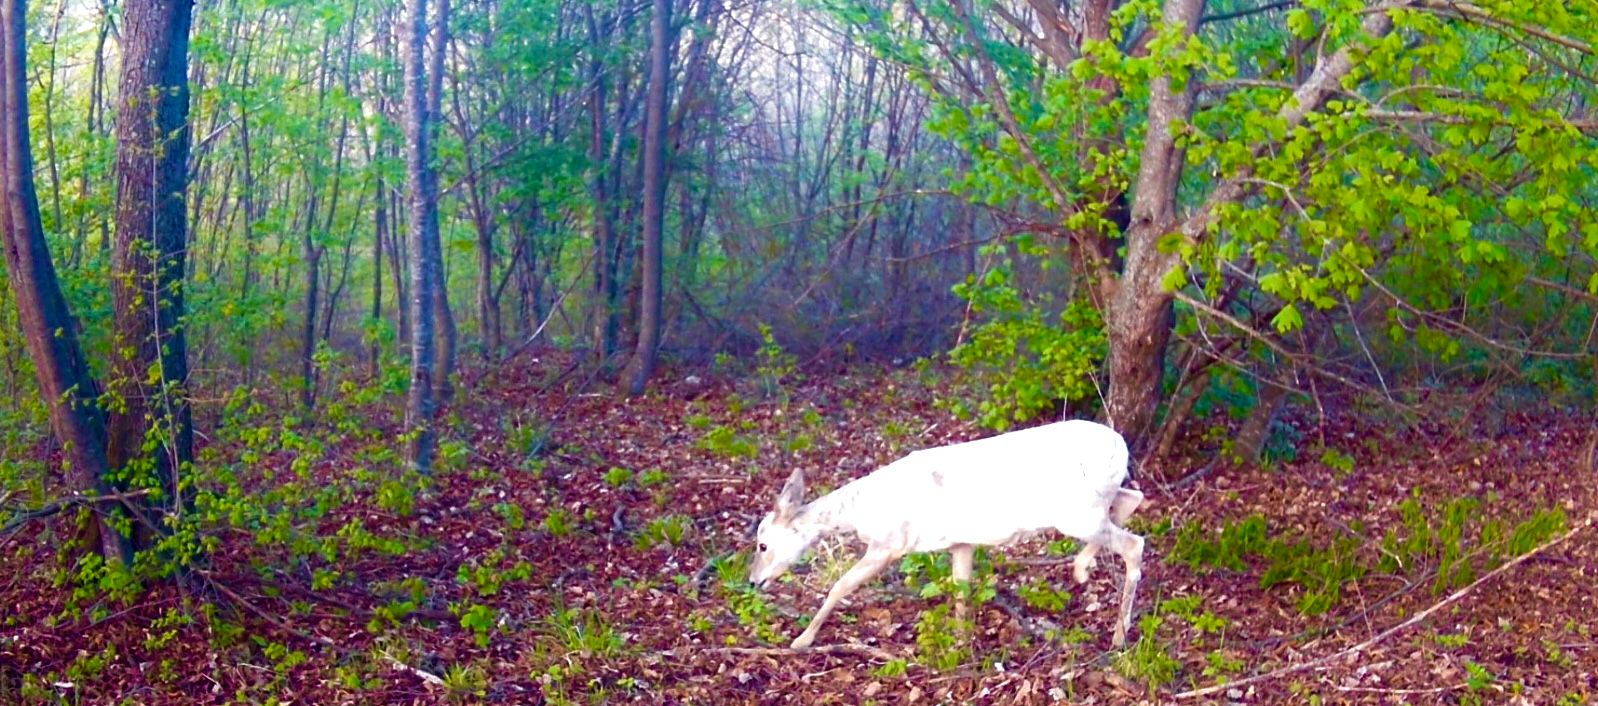 Civitella del Tronto – Capriolo bianco avvistato nei boschi, è un esemplare rarissimo